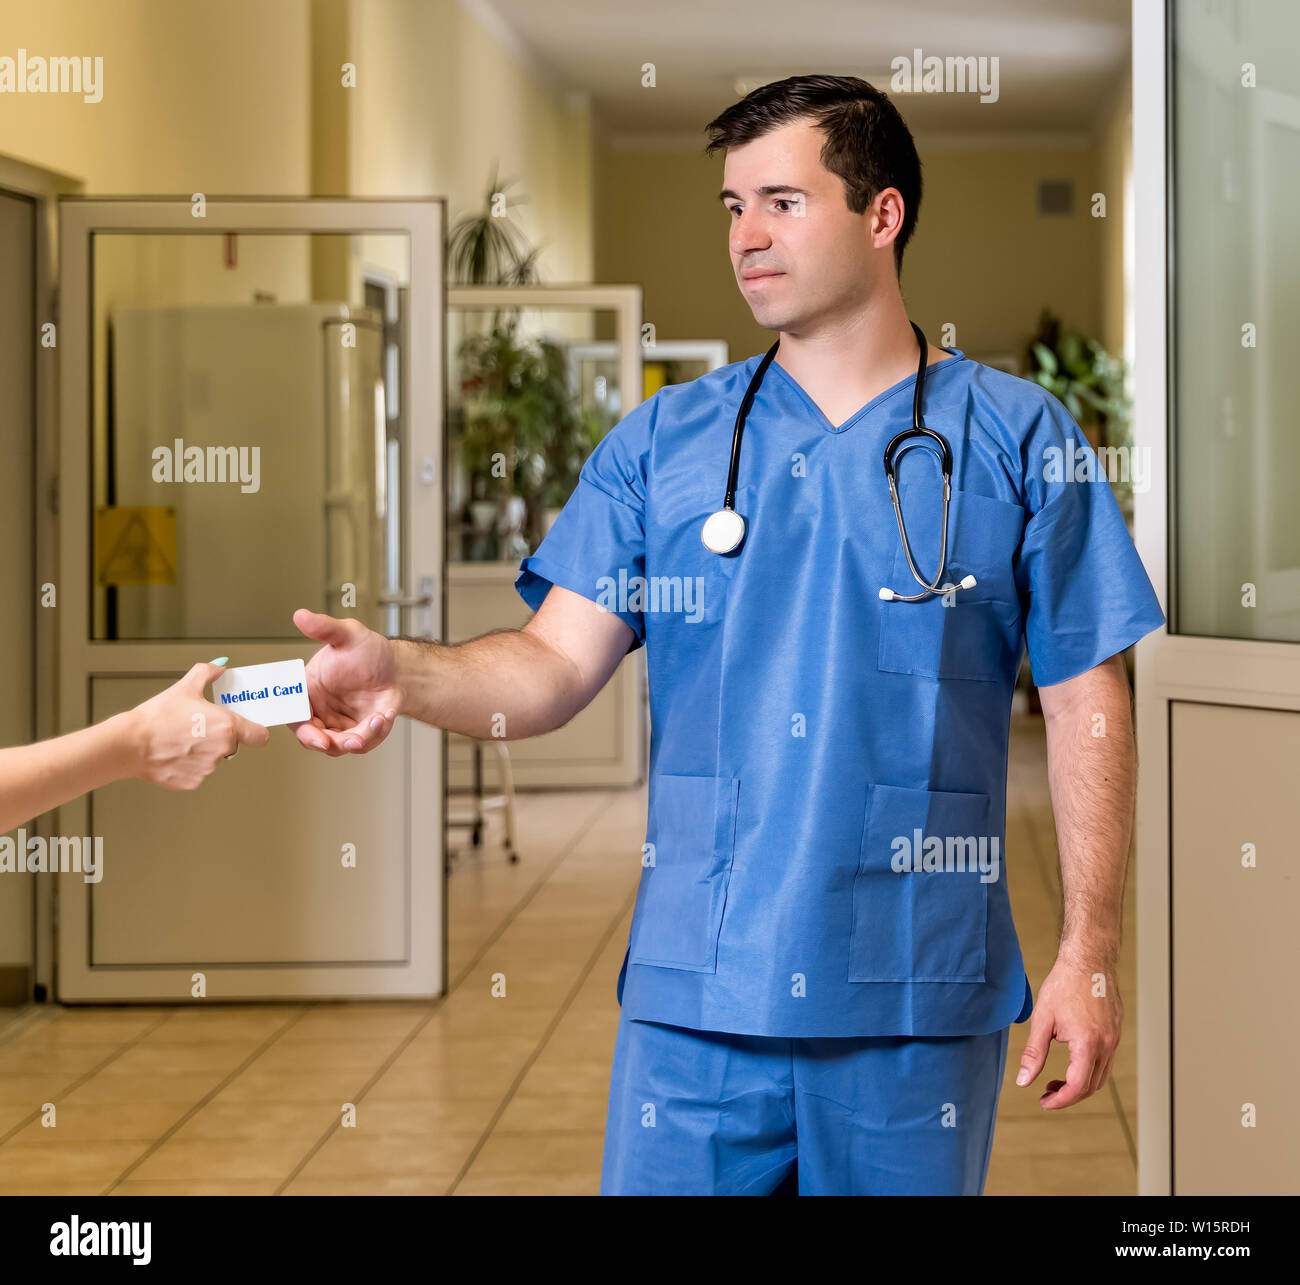 L'âge moyen, de race blanche, blanc male doctor in scrubs avec stéthoscope accepter carte médicale, couloir de l'hôpital en arrière-plan flou Banque D'Images